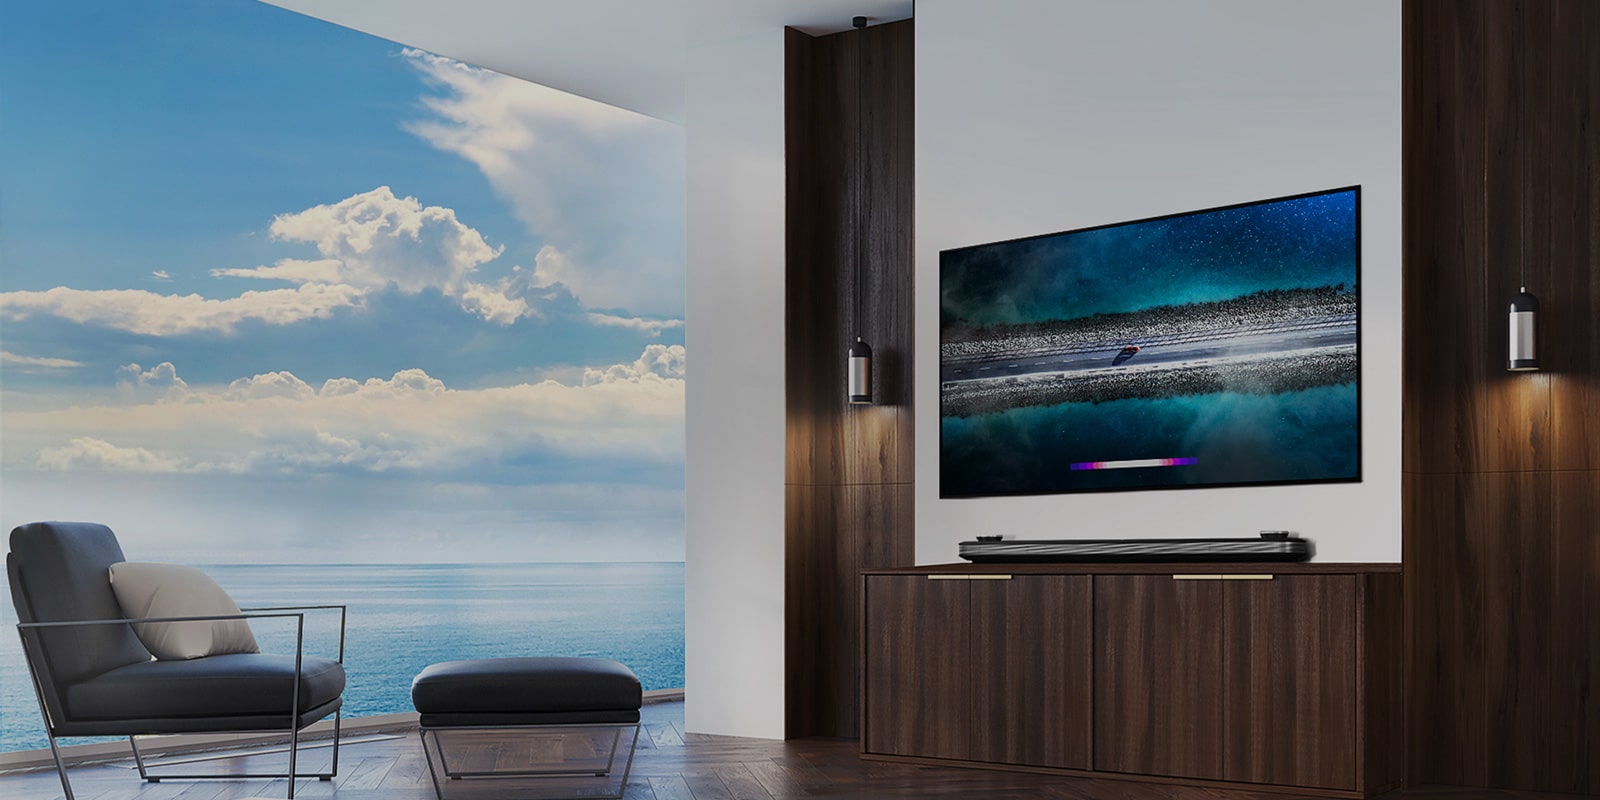 OLED TV W9 на LG SIGNATURE е окачен на стената, а диван е поставен точно пред телевизора със синьото небе над прозореца.